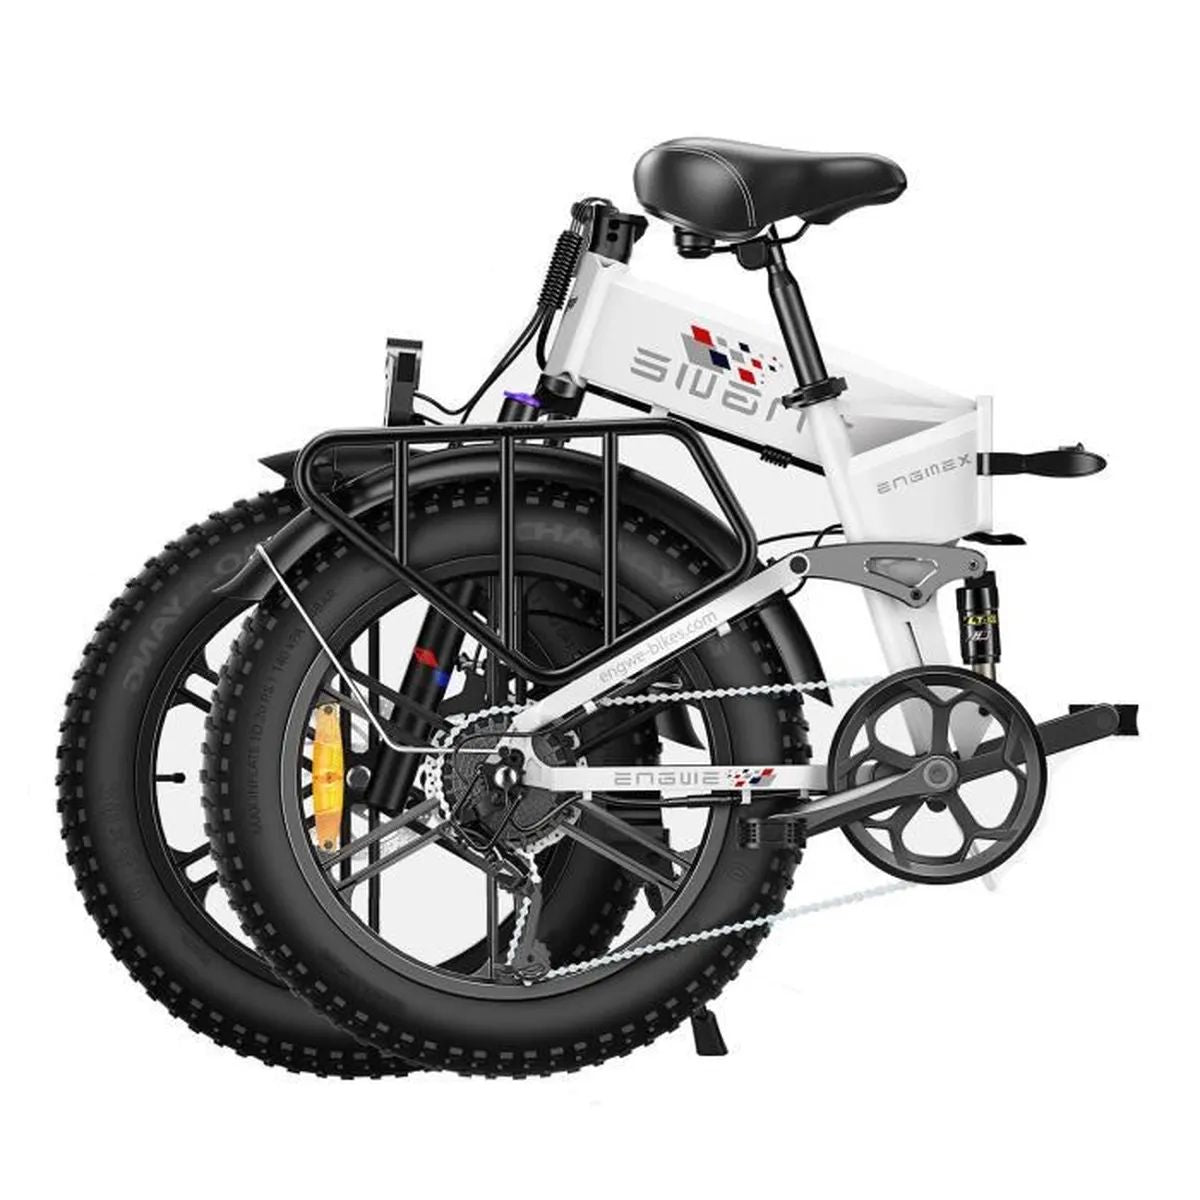 Kompakt-/Faltrad 20 Erwachsene-Rad, 624 (Laufradgröße: Weiß) ENGINE Wh, Zoll, ENGWE X